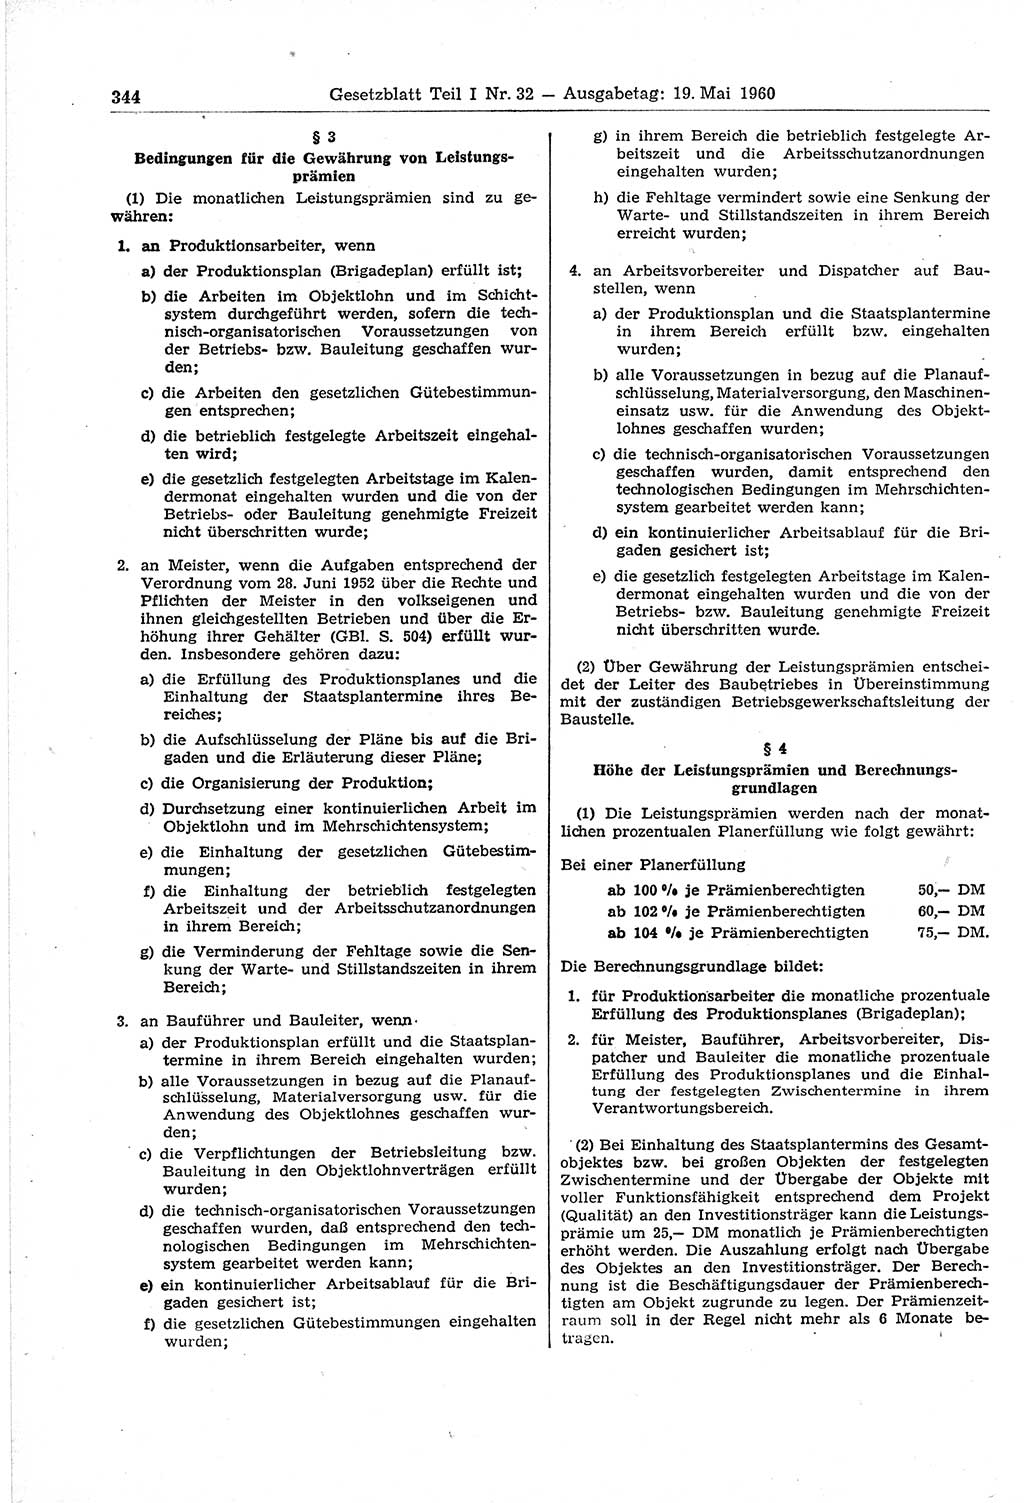 Gesetzblatt (GBl.) der Deutschen Demokratischen Republik (DDR) Teil Ⅰ 1960, Seite 344 (GBl. DDR Ⅰ 1960, S. 344)